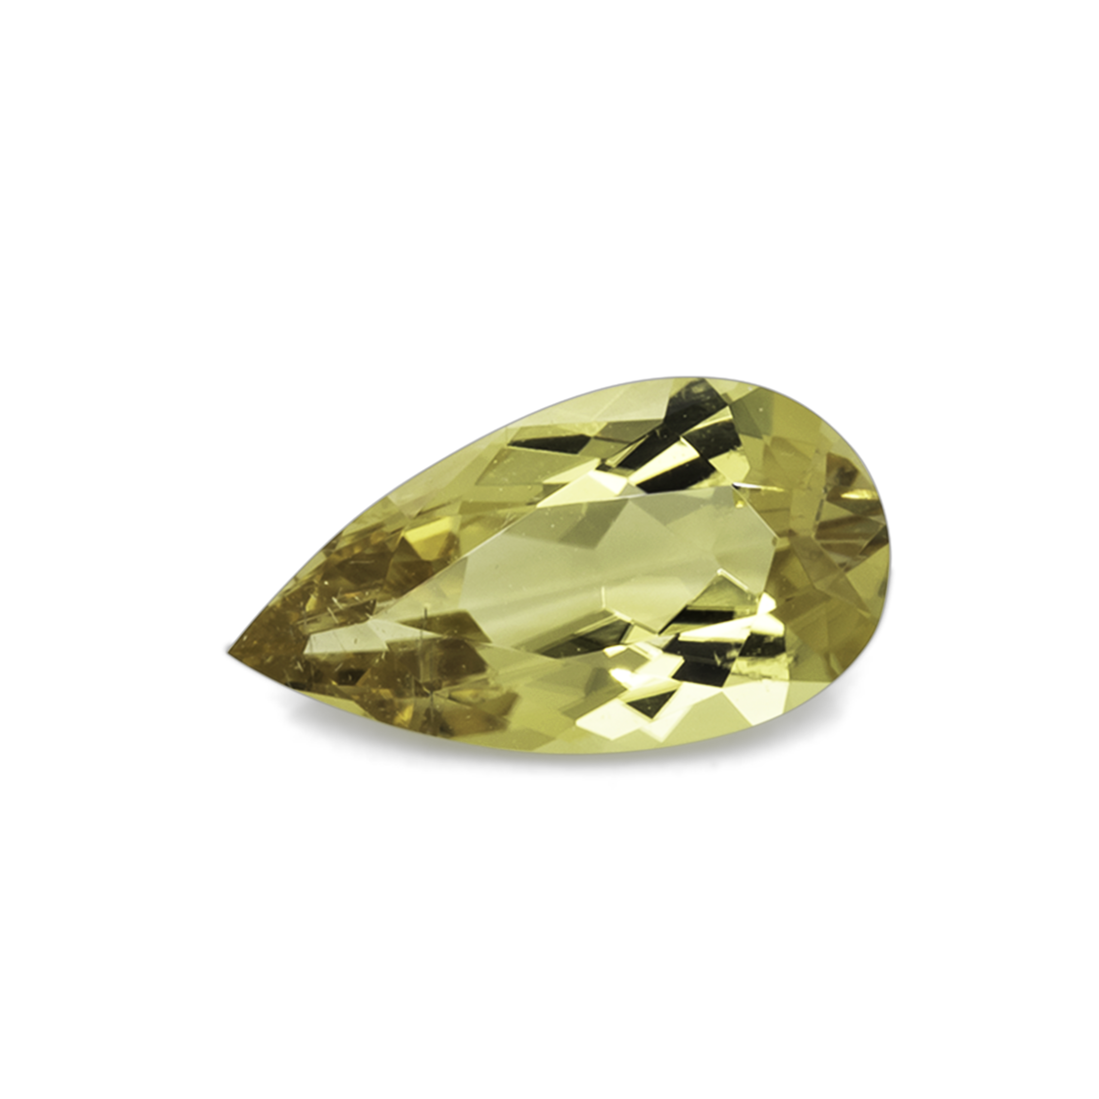 Turmalin - gelb, birnform, 11x6 mm, 1,46 cts, Nr. TR101334